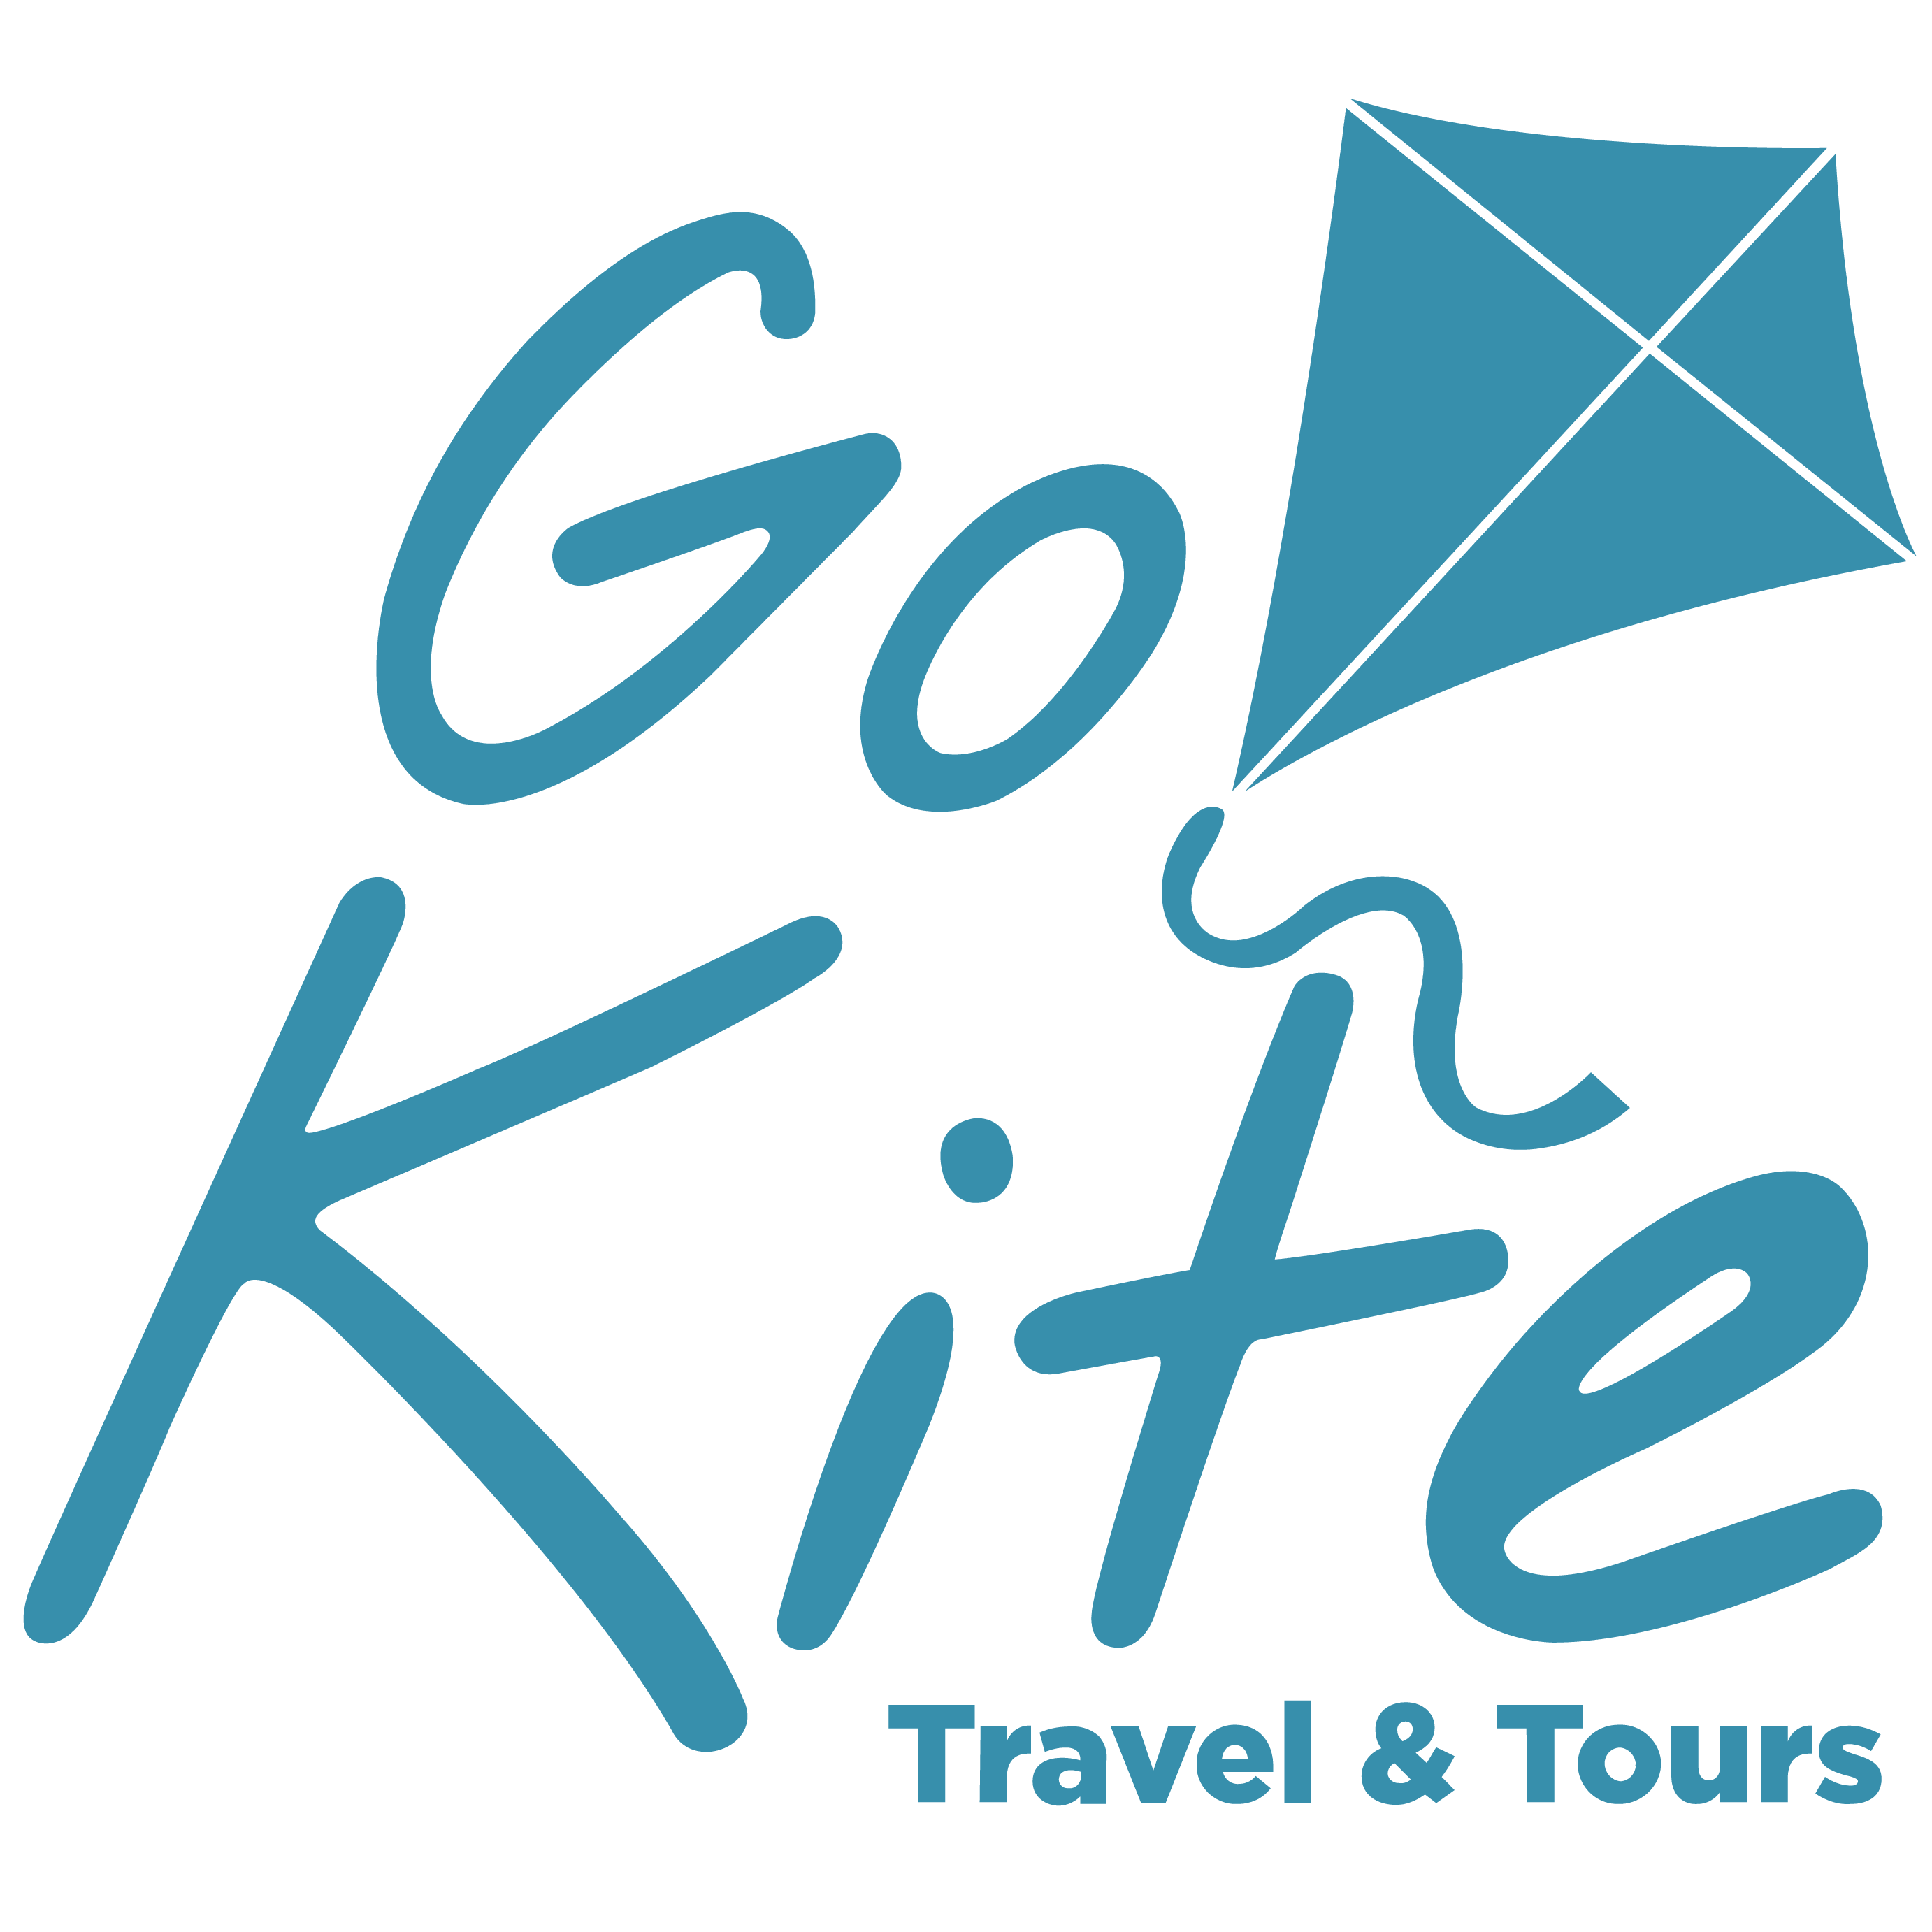 Go Kite Tours